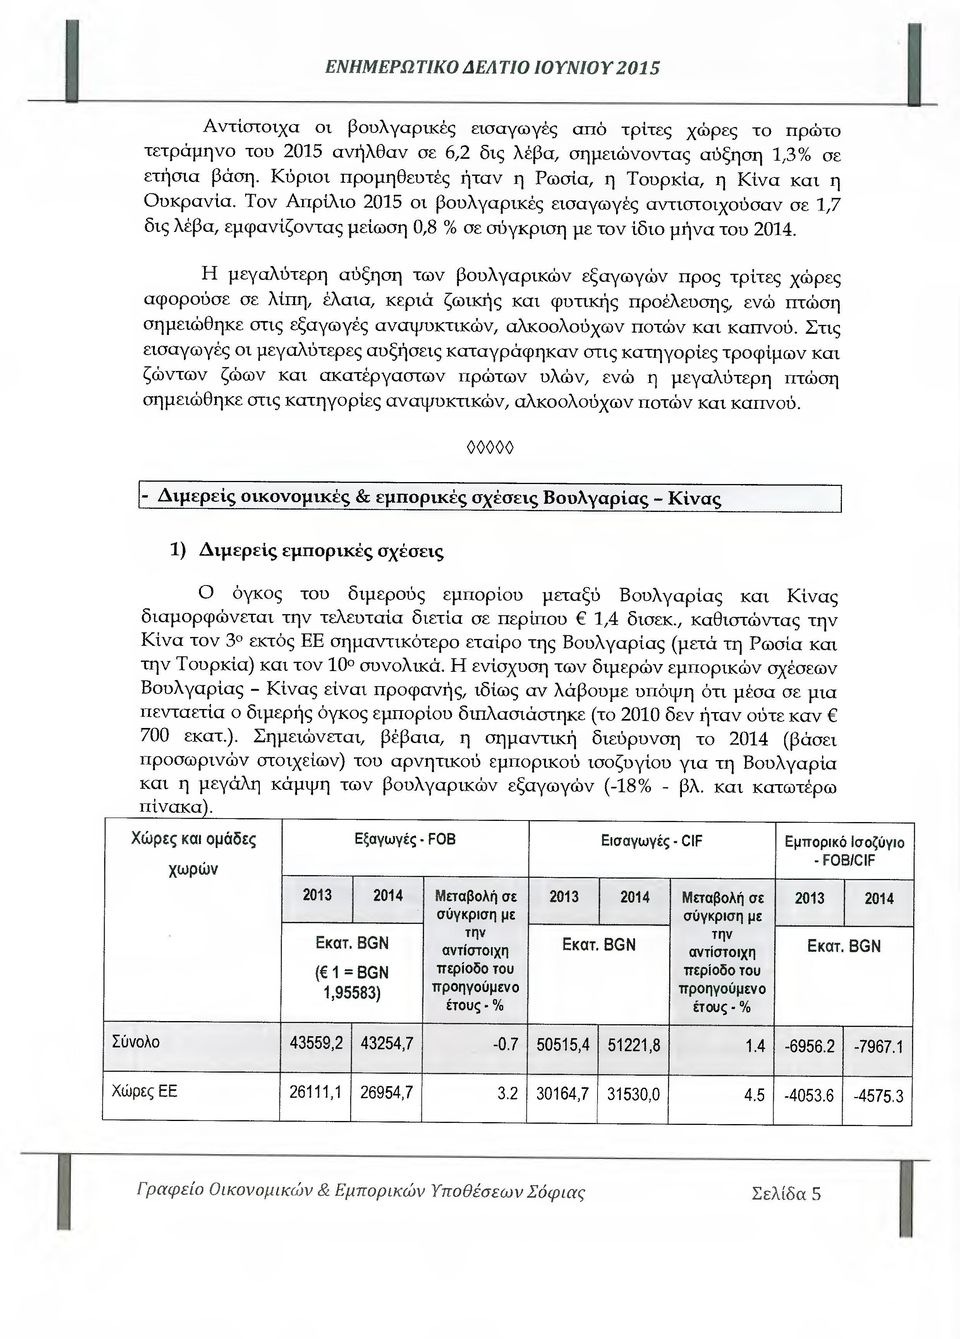 Τον Απρίλιο 2015 οι βουλγαρικές εισαγωγές αντιστοιχούσαν σε 1,7 δις λέβα, εµφανίζοντας µείωση 0,8 % σε σύγκριση µε τον ίδιο µήνα του 2014.